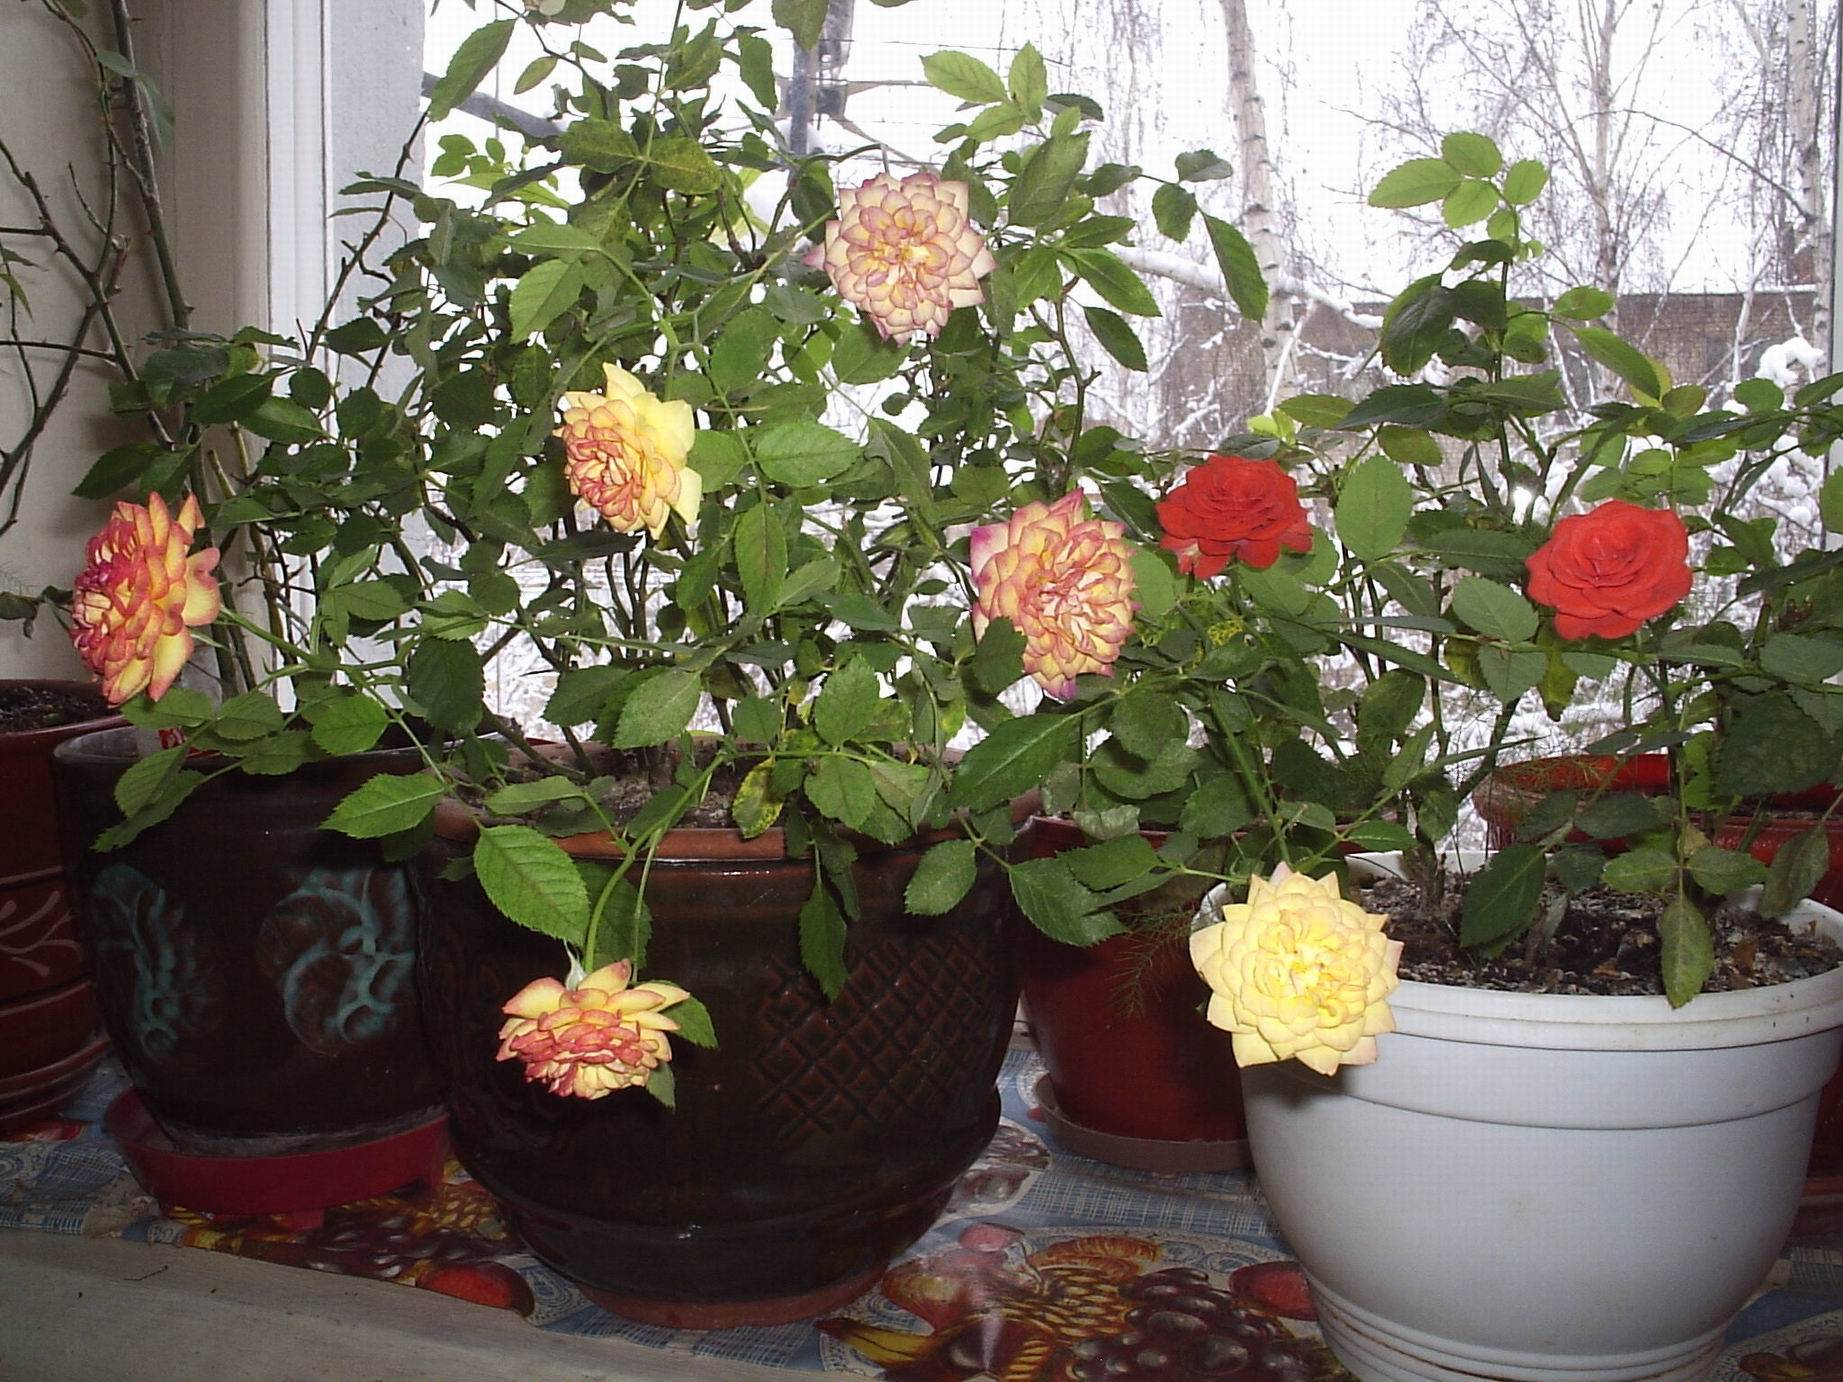 Комнатная роза – уход в домашних условиях, подготовка грунта, правила полива и подкормки, борьба с болезнями